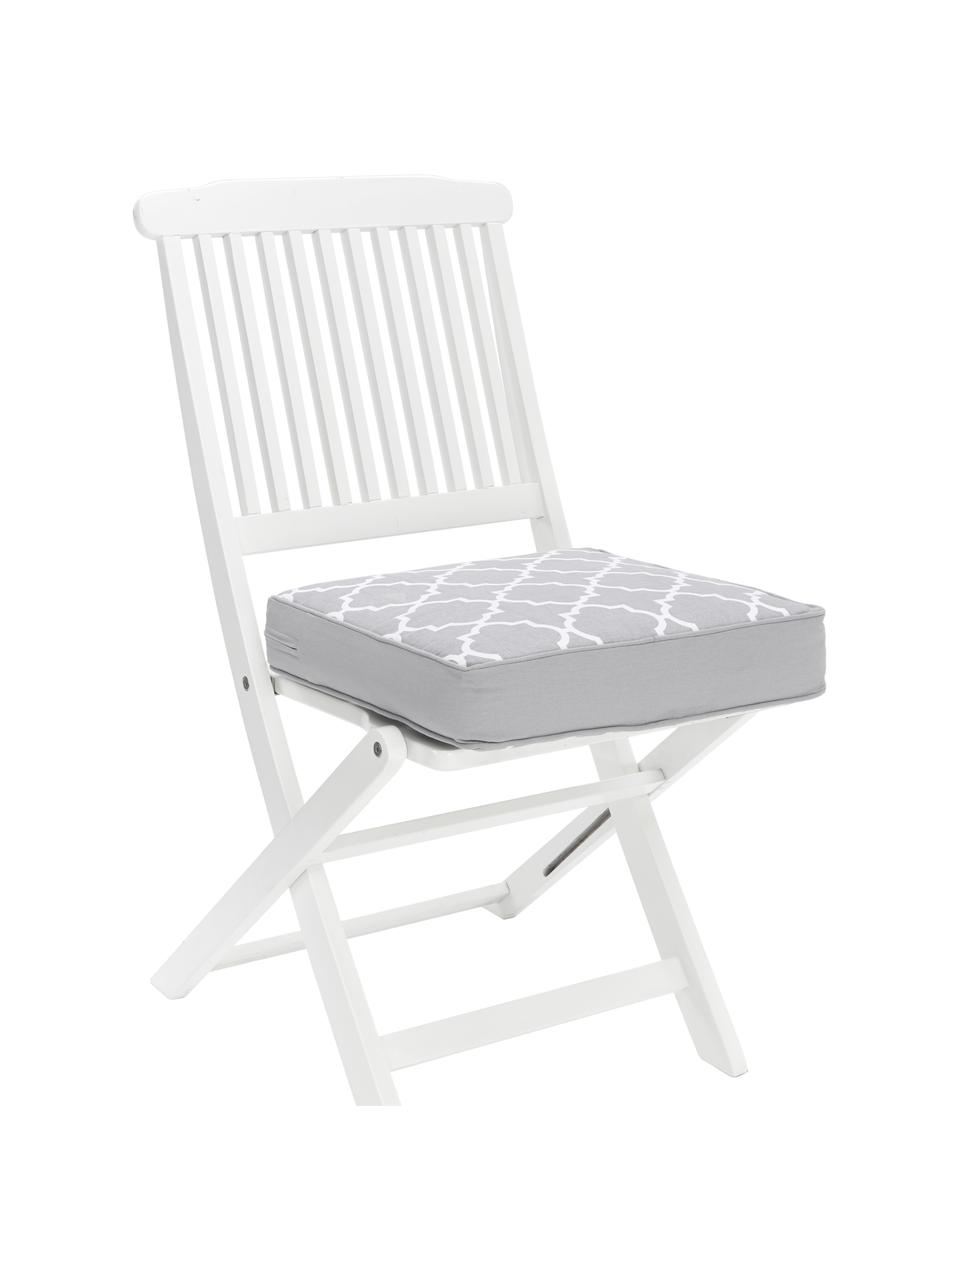 Cuscino sedia alto grigio chiaro/bianco Lana, Rivestimento: 100% cotone, Grigio, Larg. 40 x Lung. 40 cm